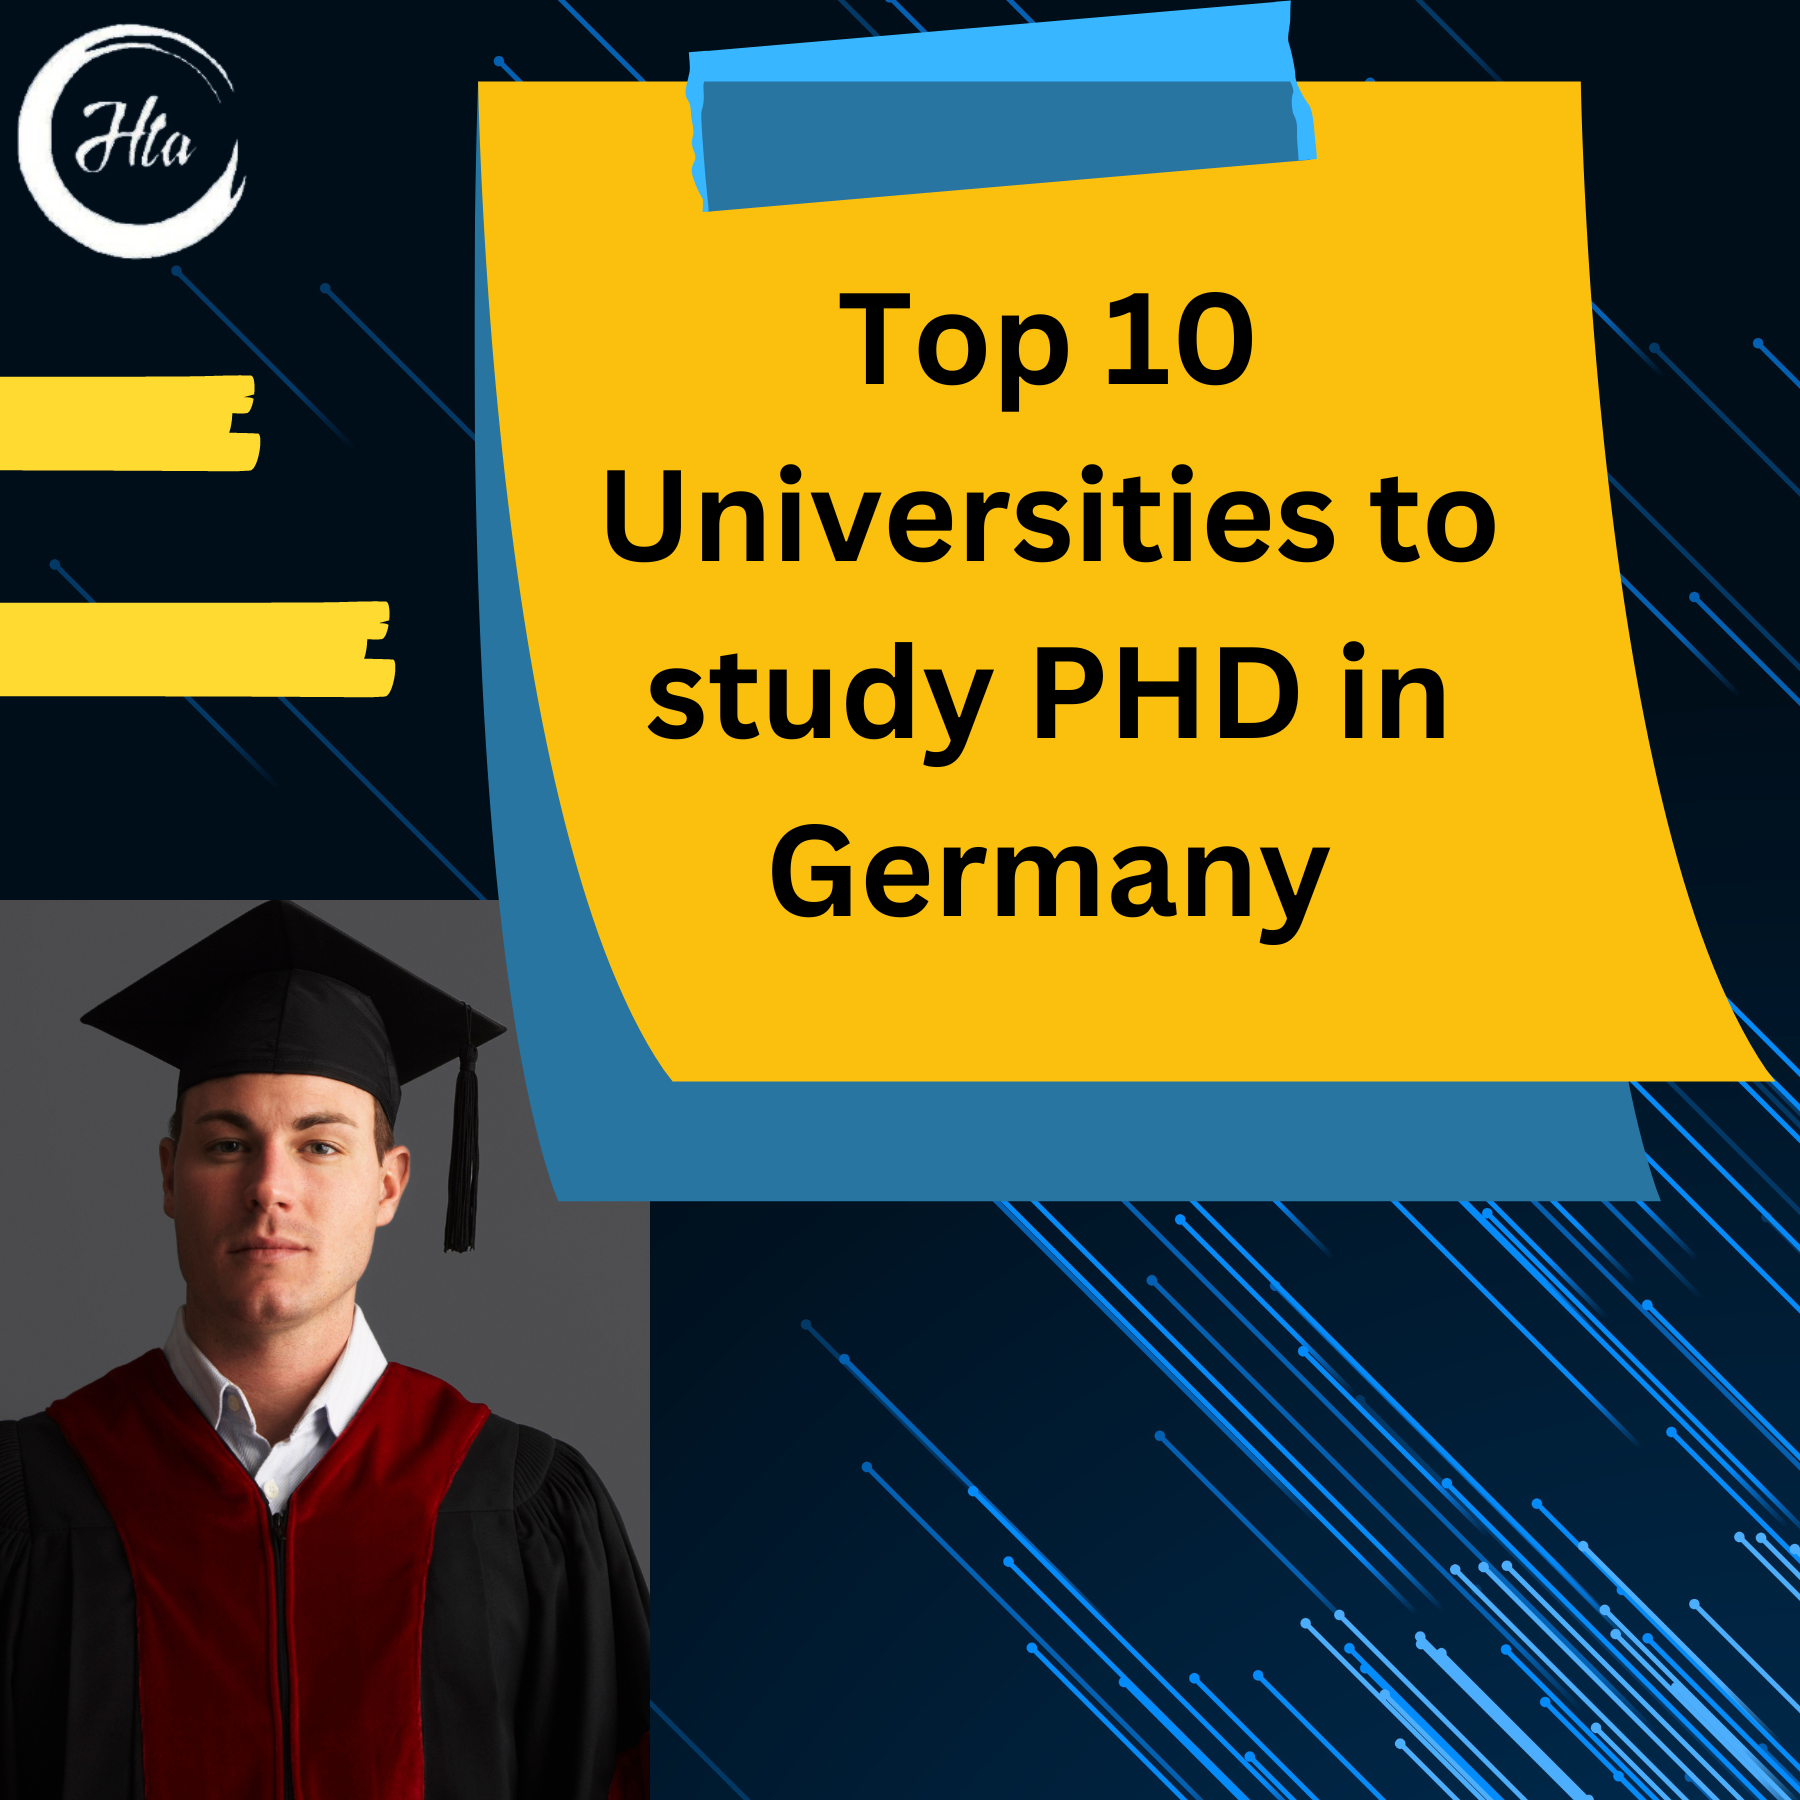 phd in germany universities